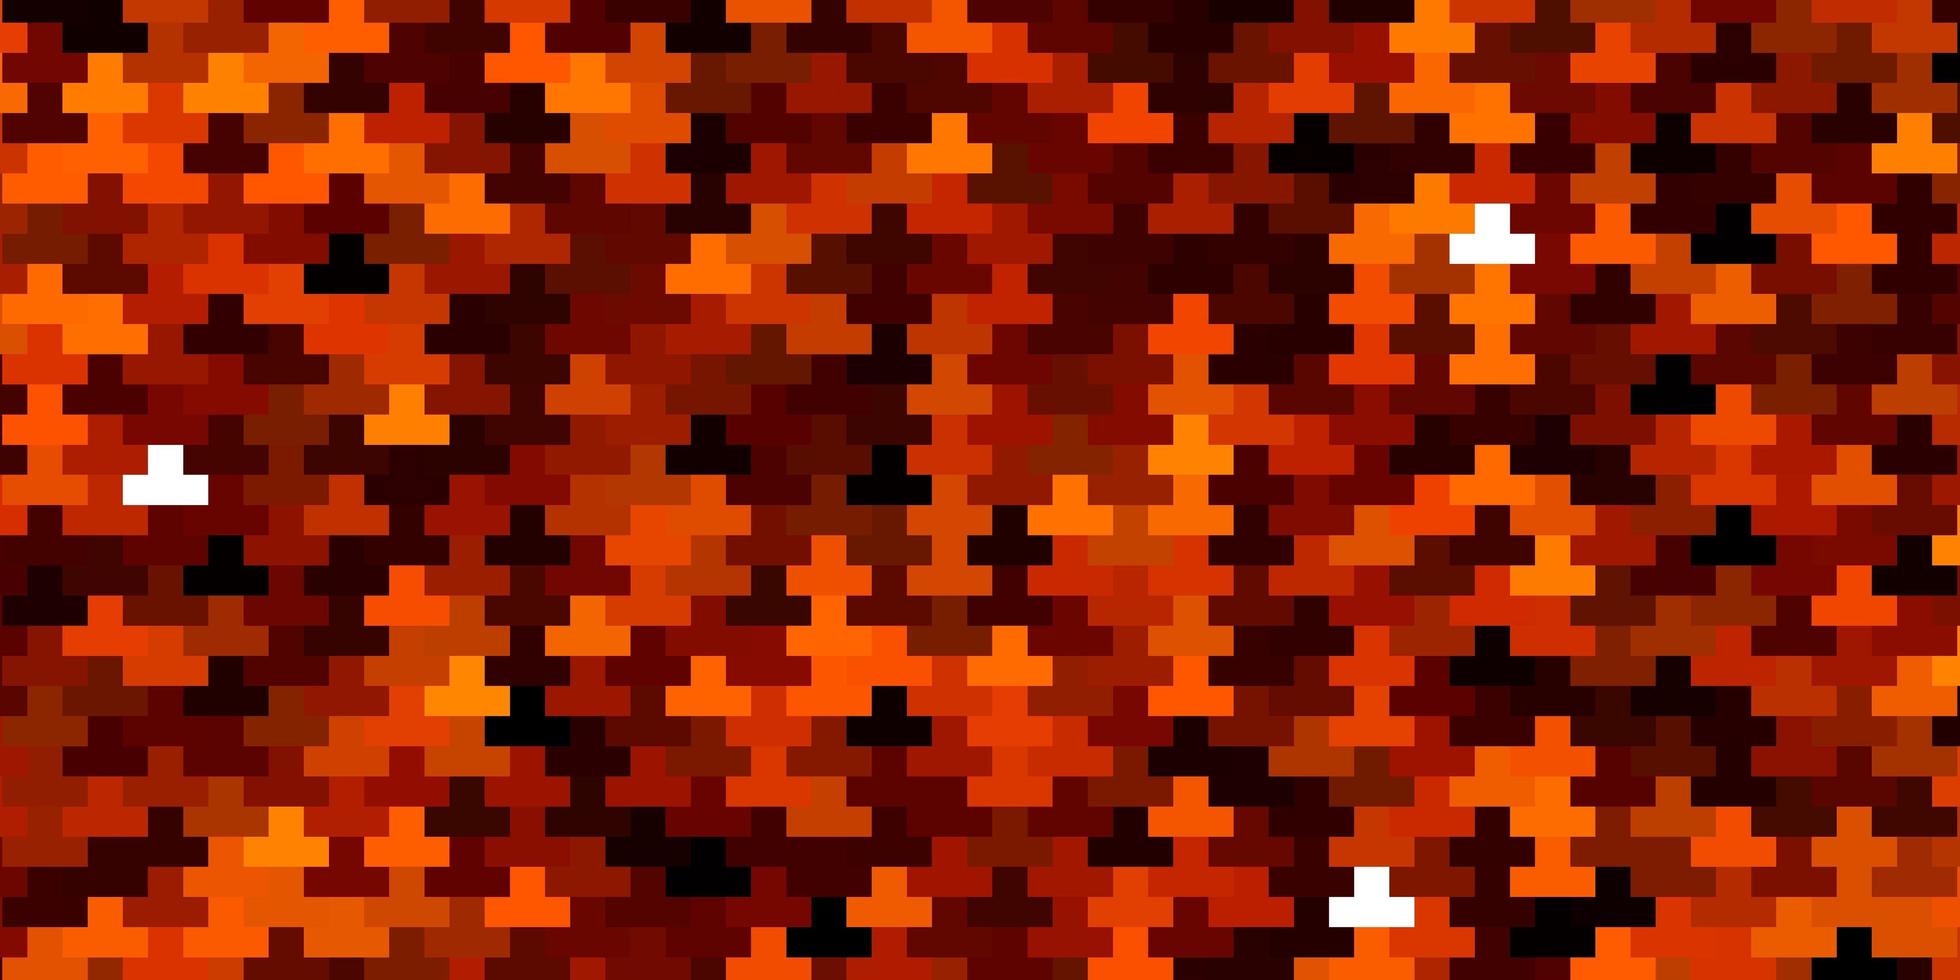 padrão de vetor laranja escuro em estilo quadrado.